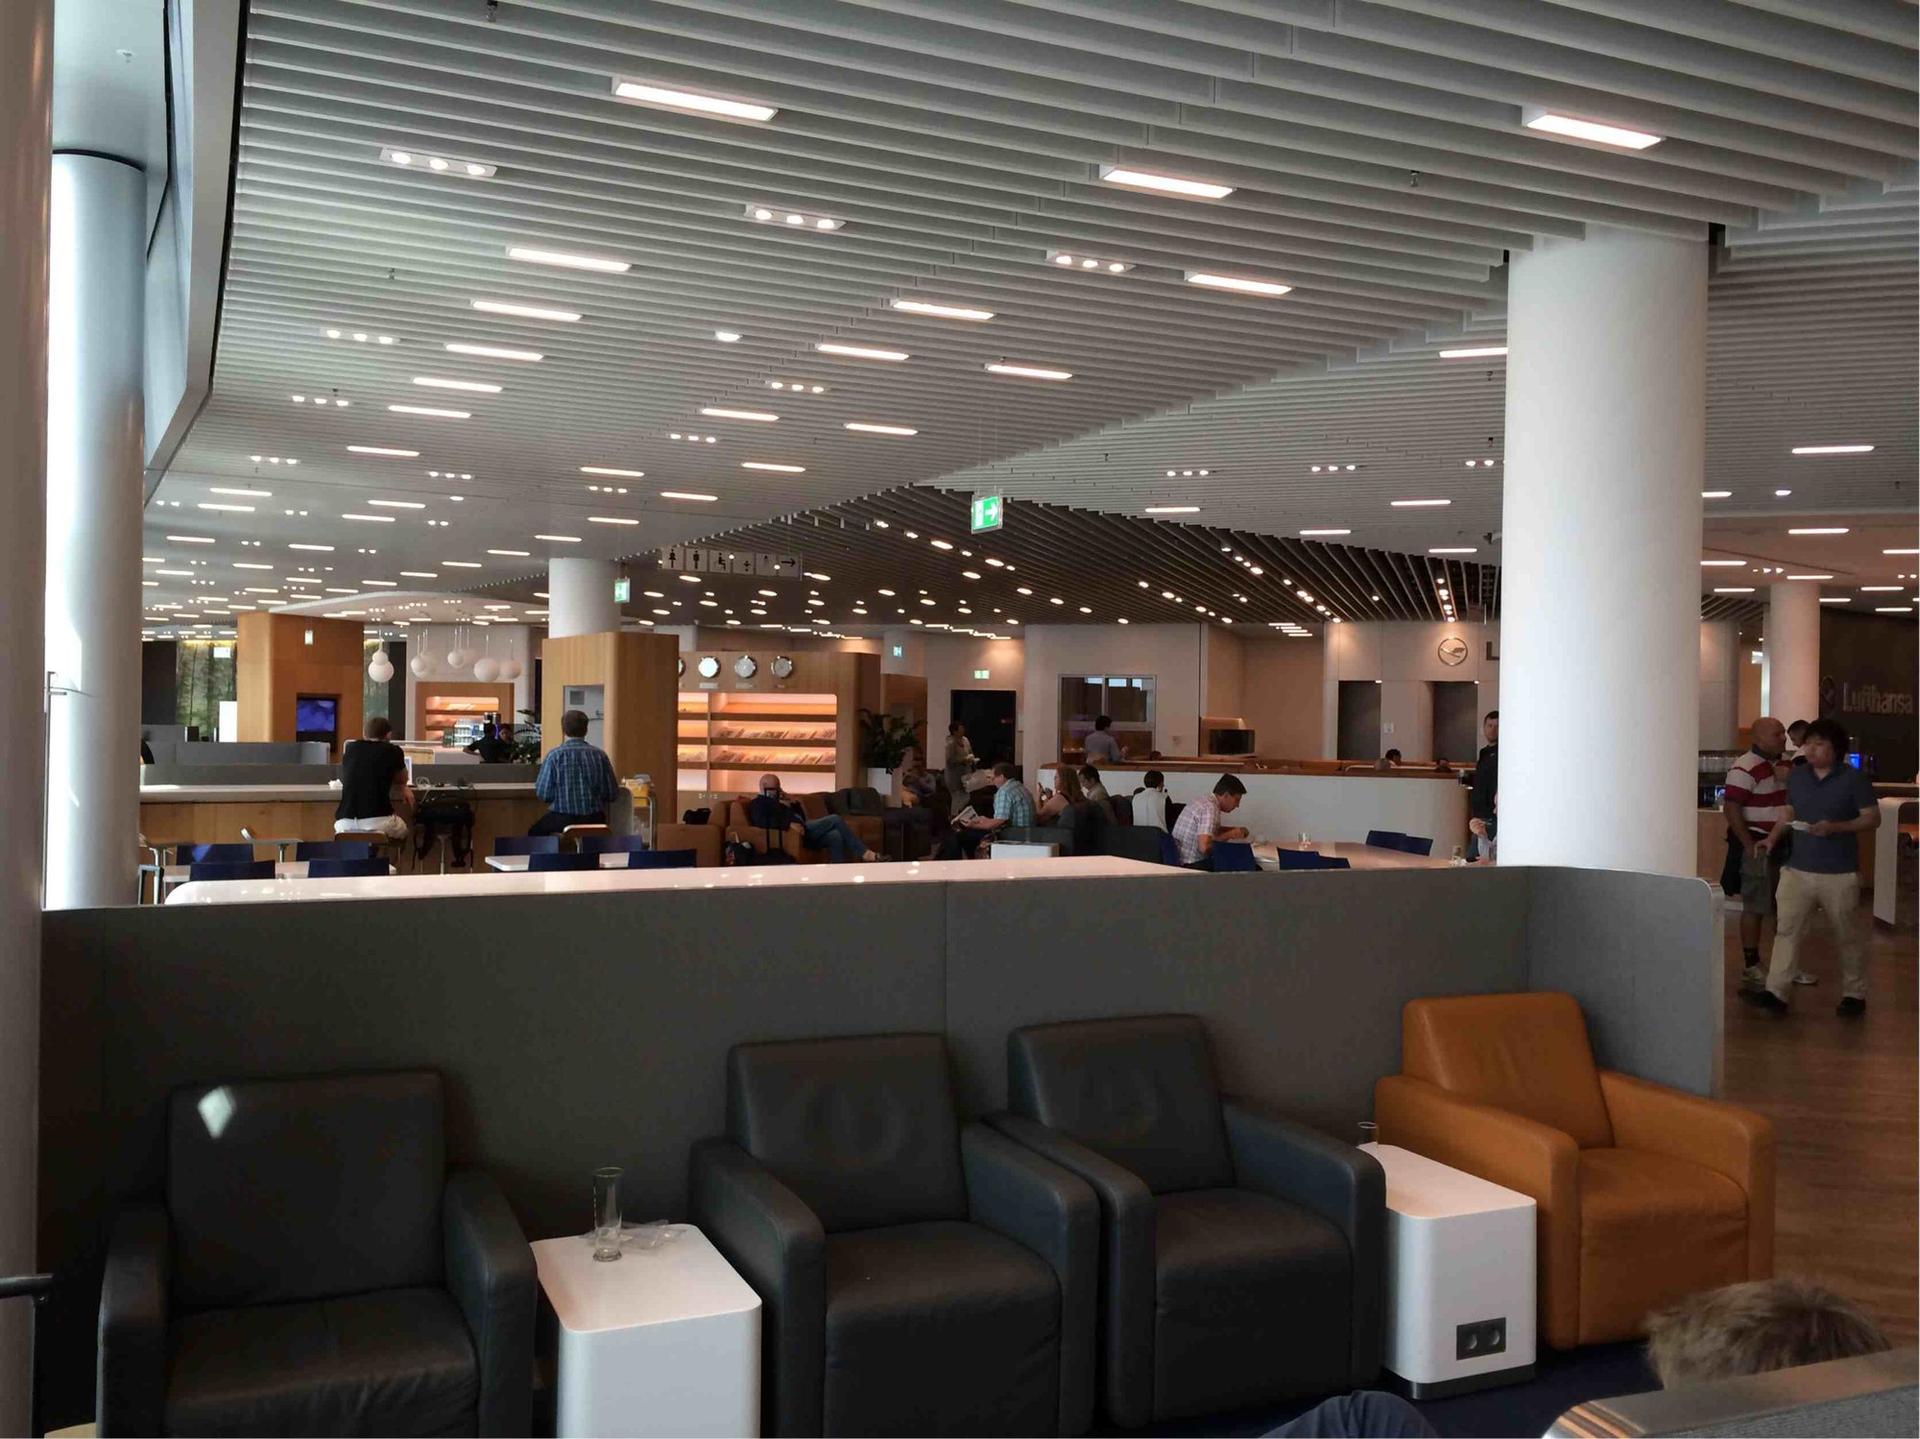 Lufthansa Business Lounge (Non-Schengen) image 14 of 14